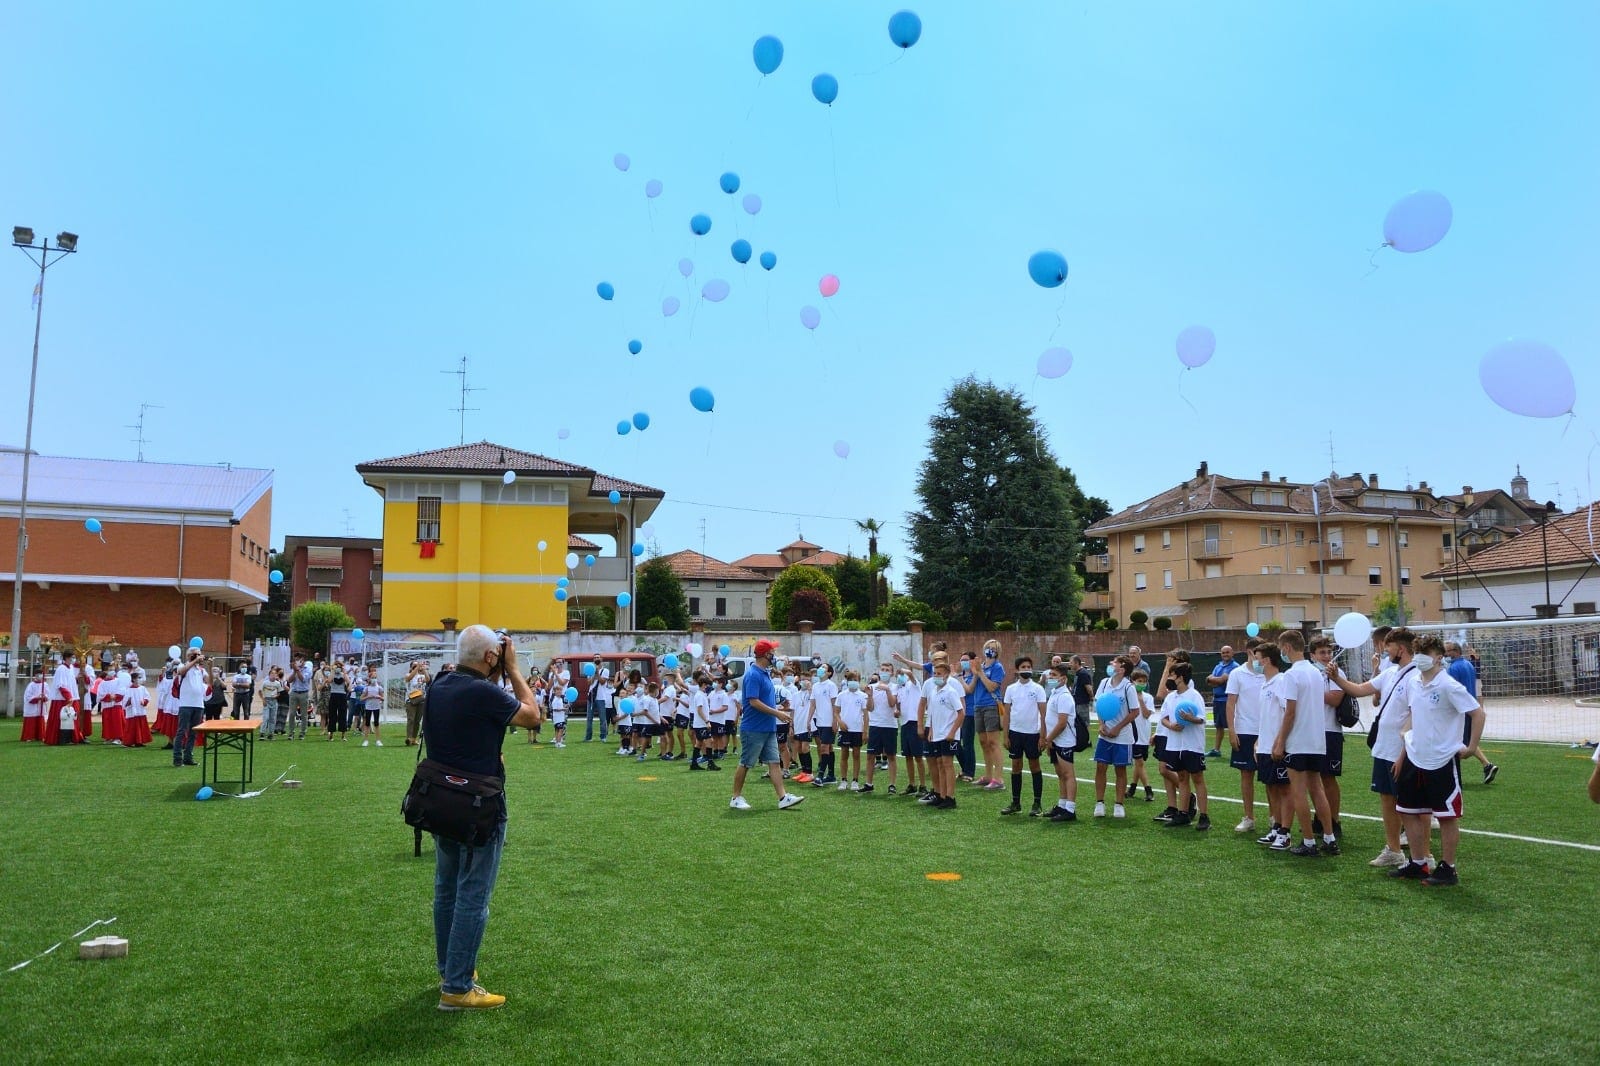 Festa e lancio palloncini a Cogliate per il compleanno dell’oratorio